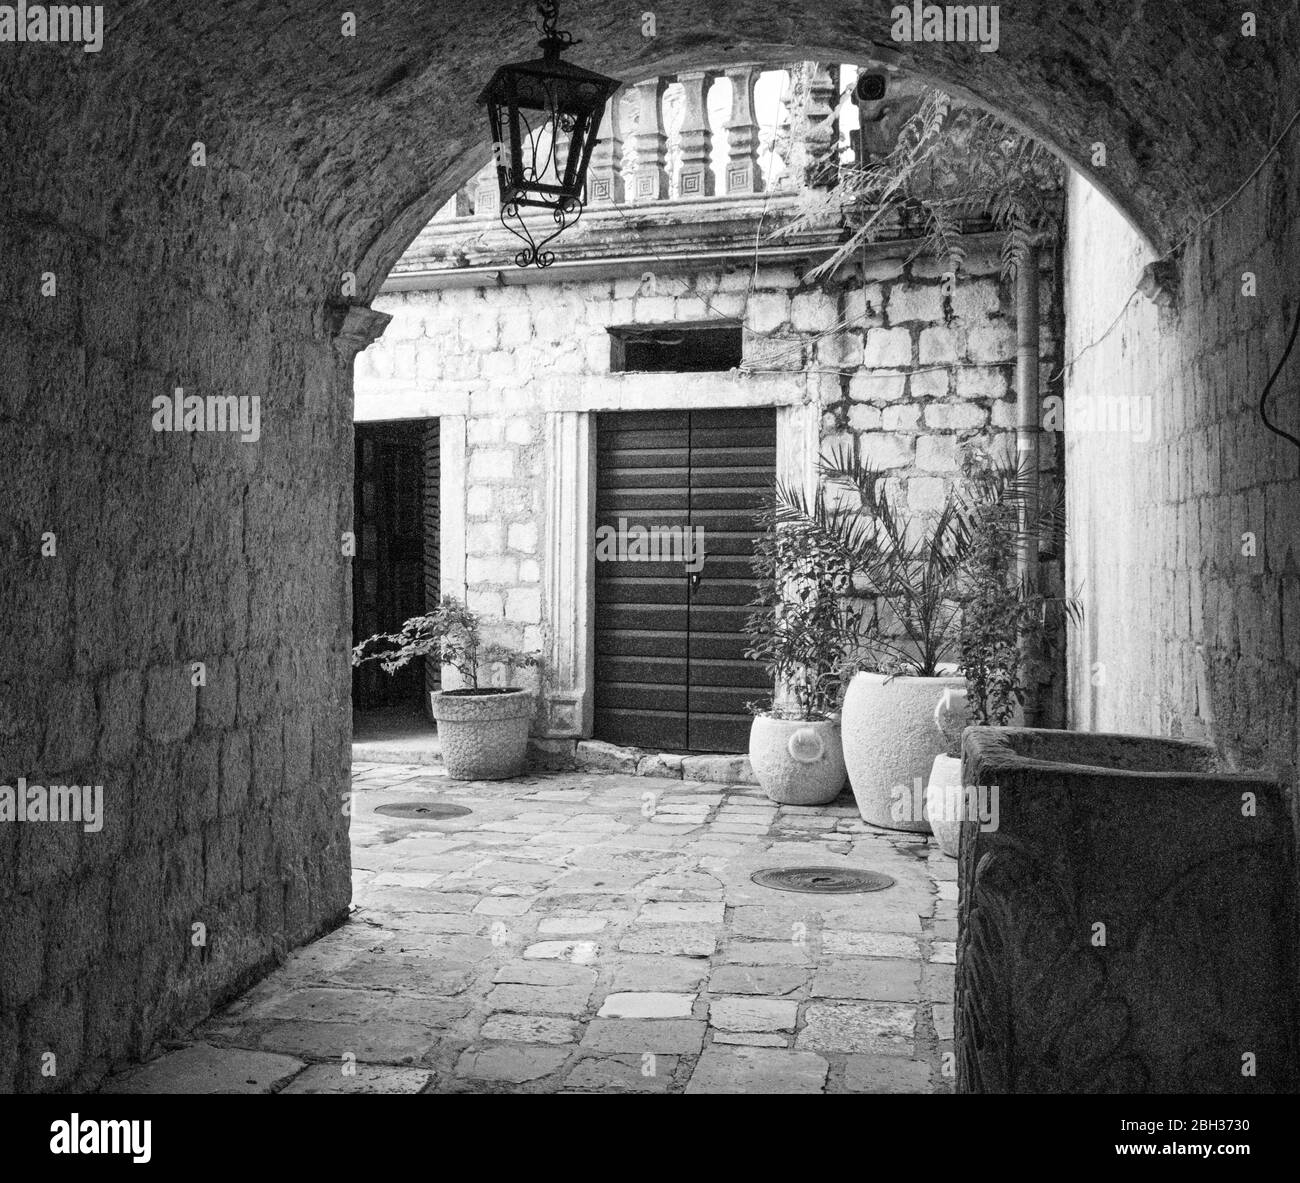 Image en noir et blanc de l'arcade menant à la cour et aux maisons pavées, la vieille ville, Kotor, site classé au patrimoine mondial de l'UNESCO, Monténégro, Europe Banque D'Images